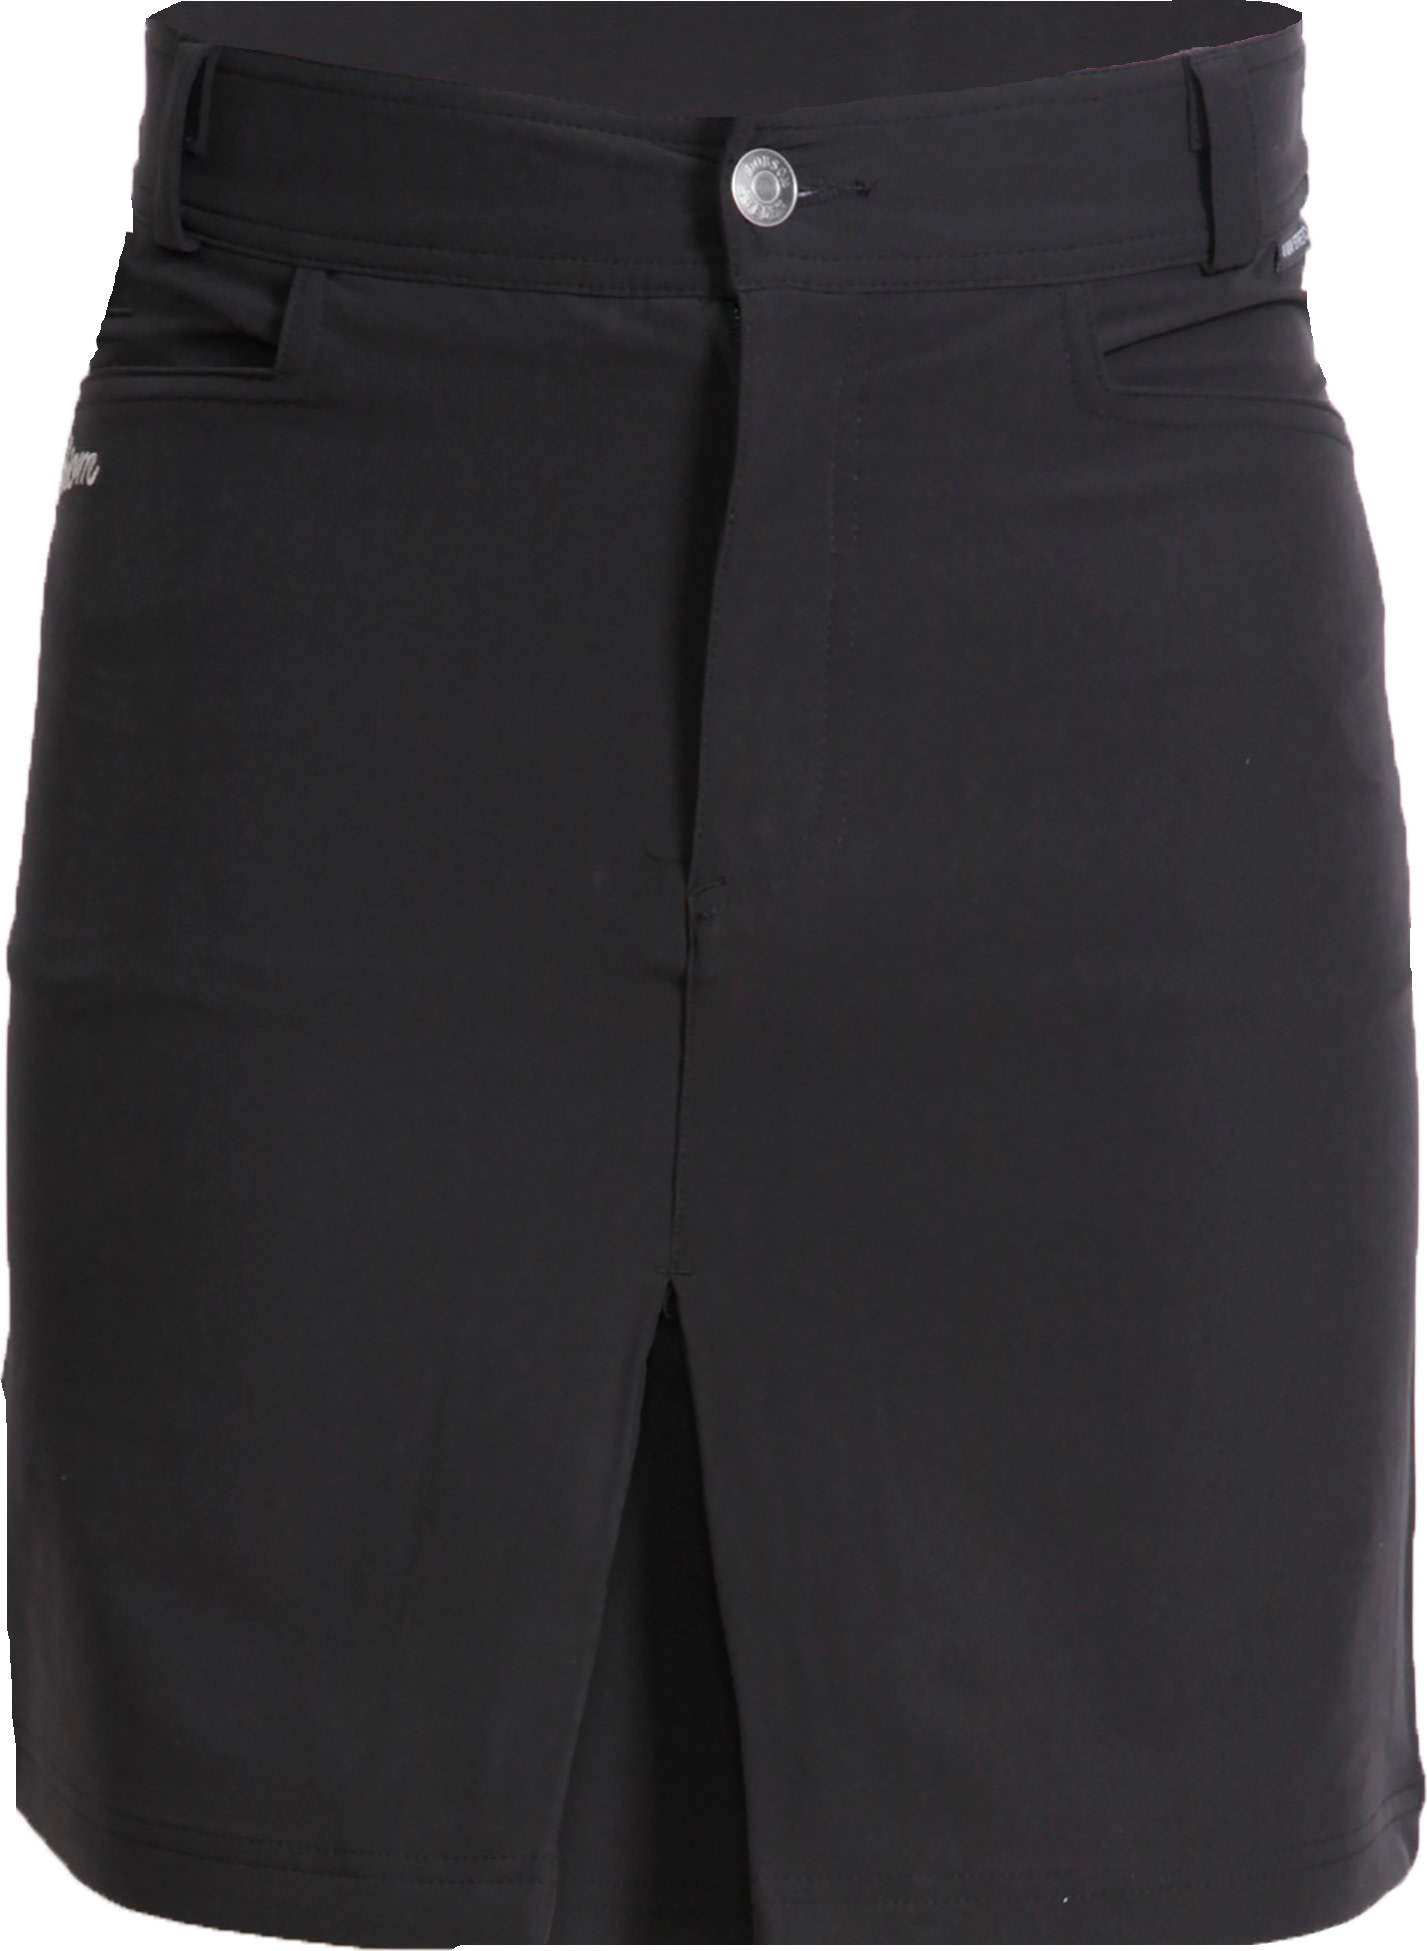 Women's Backa Skirt Black